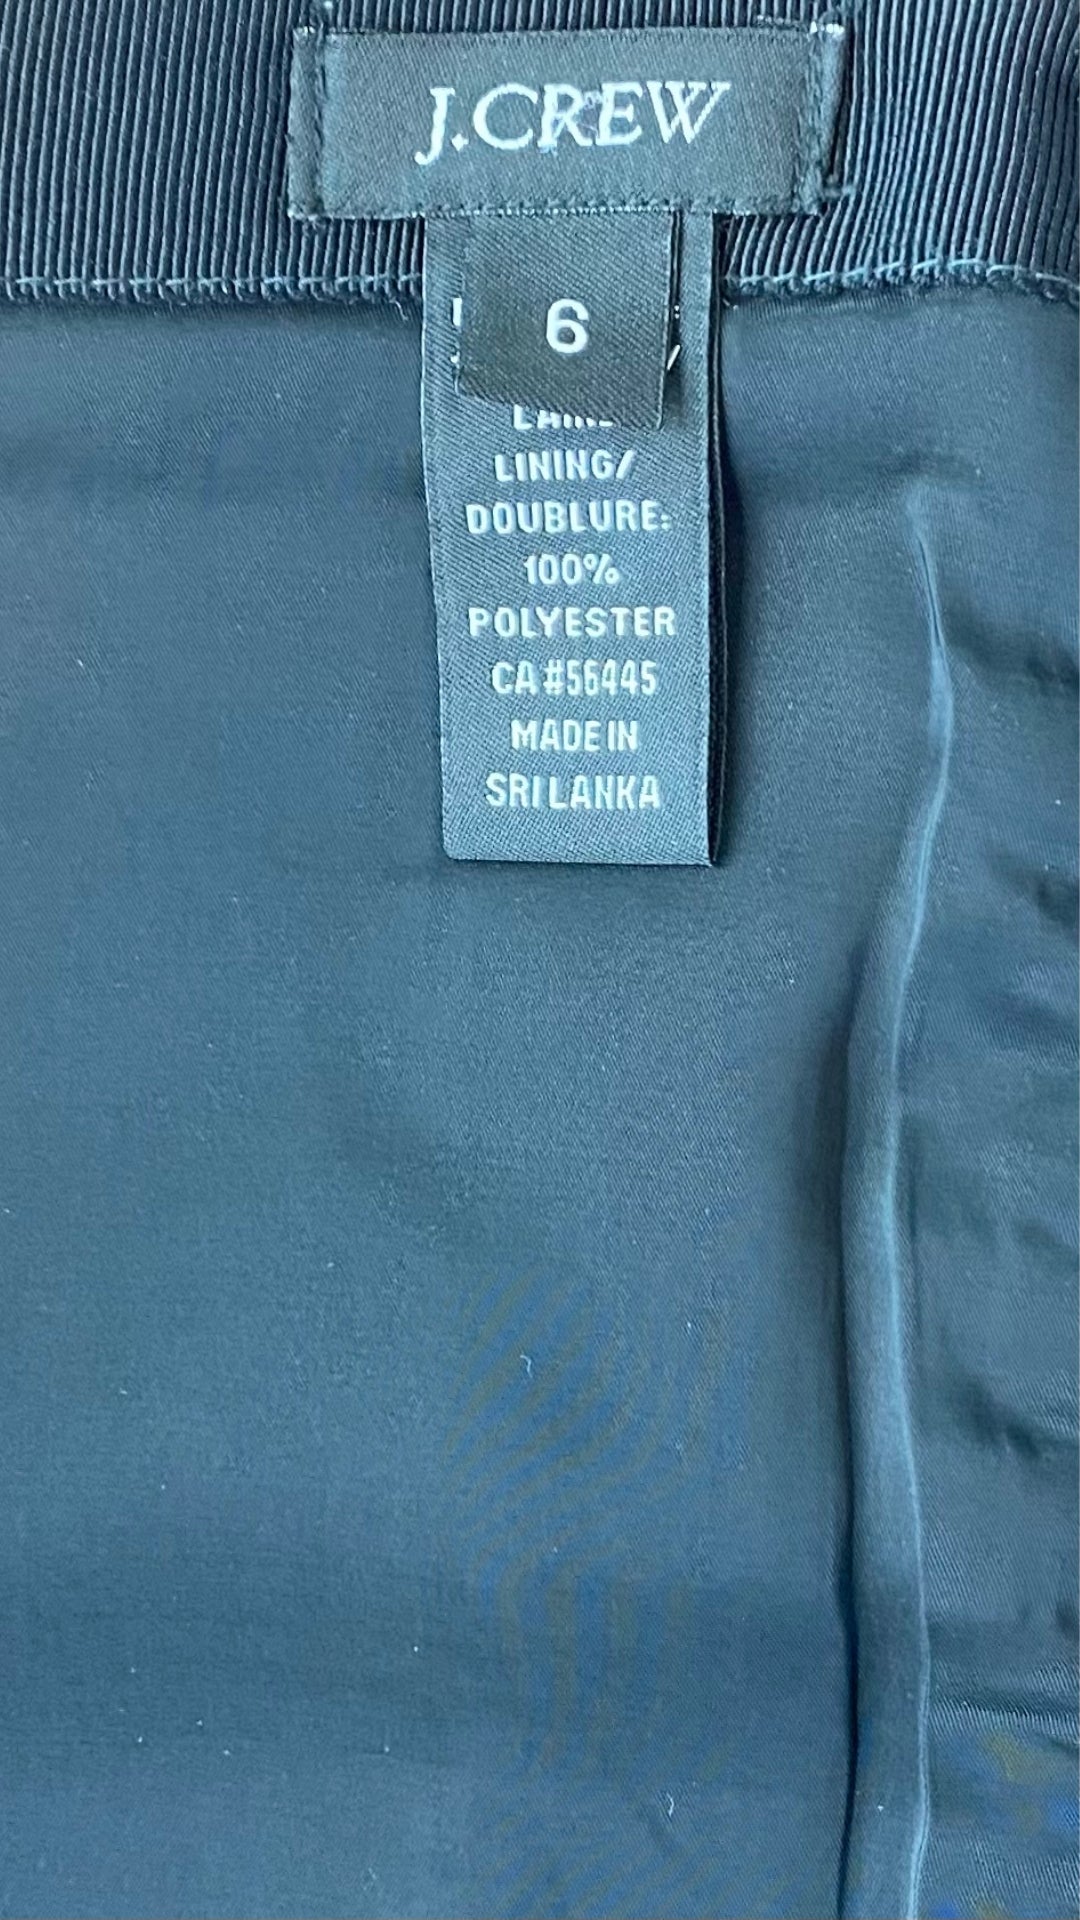 Jupe crayon J.Crew en lainage gris, vue de l'étiquette de taille et marque.